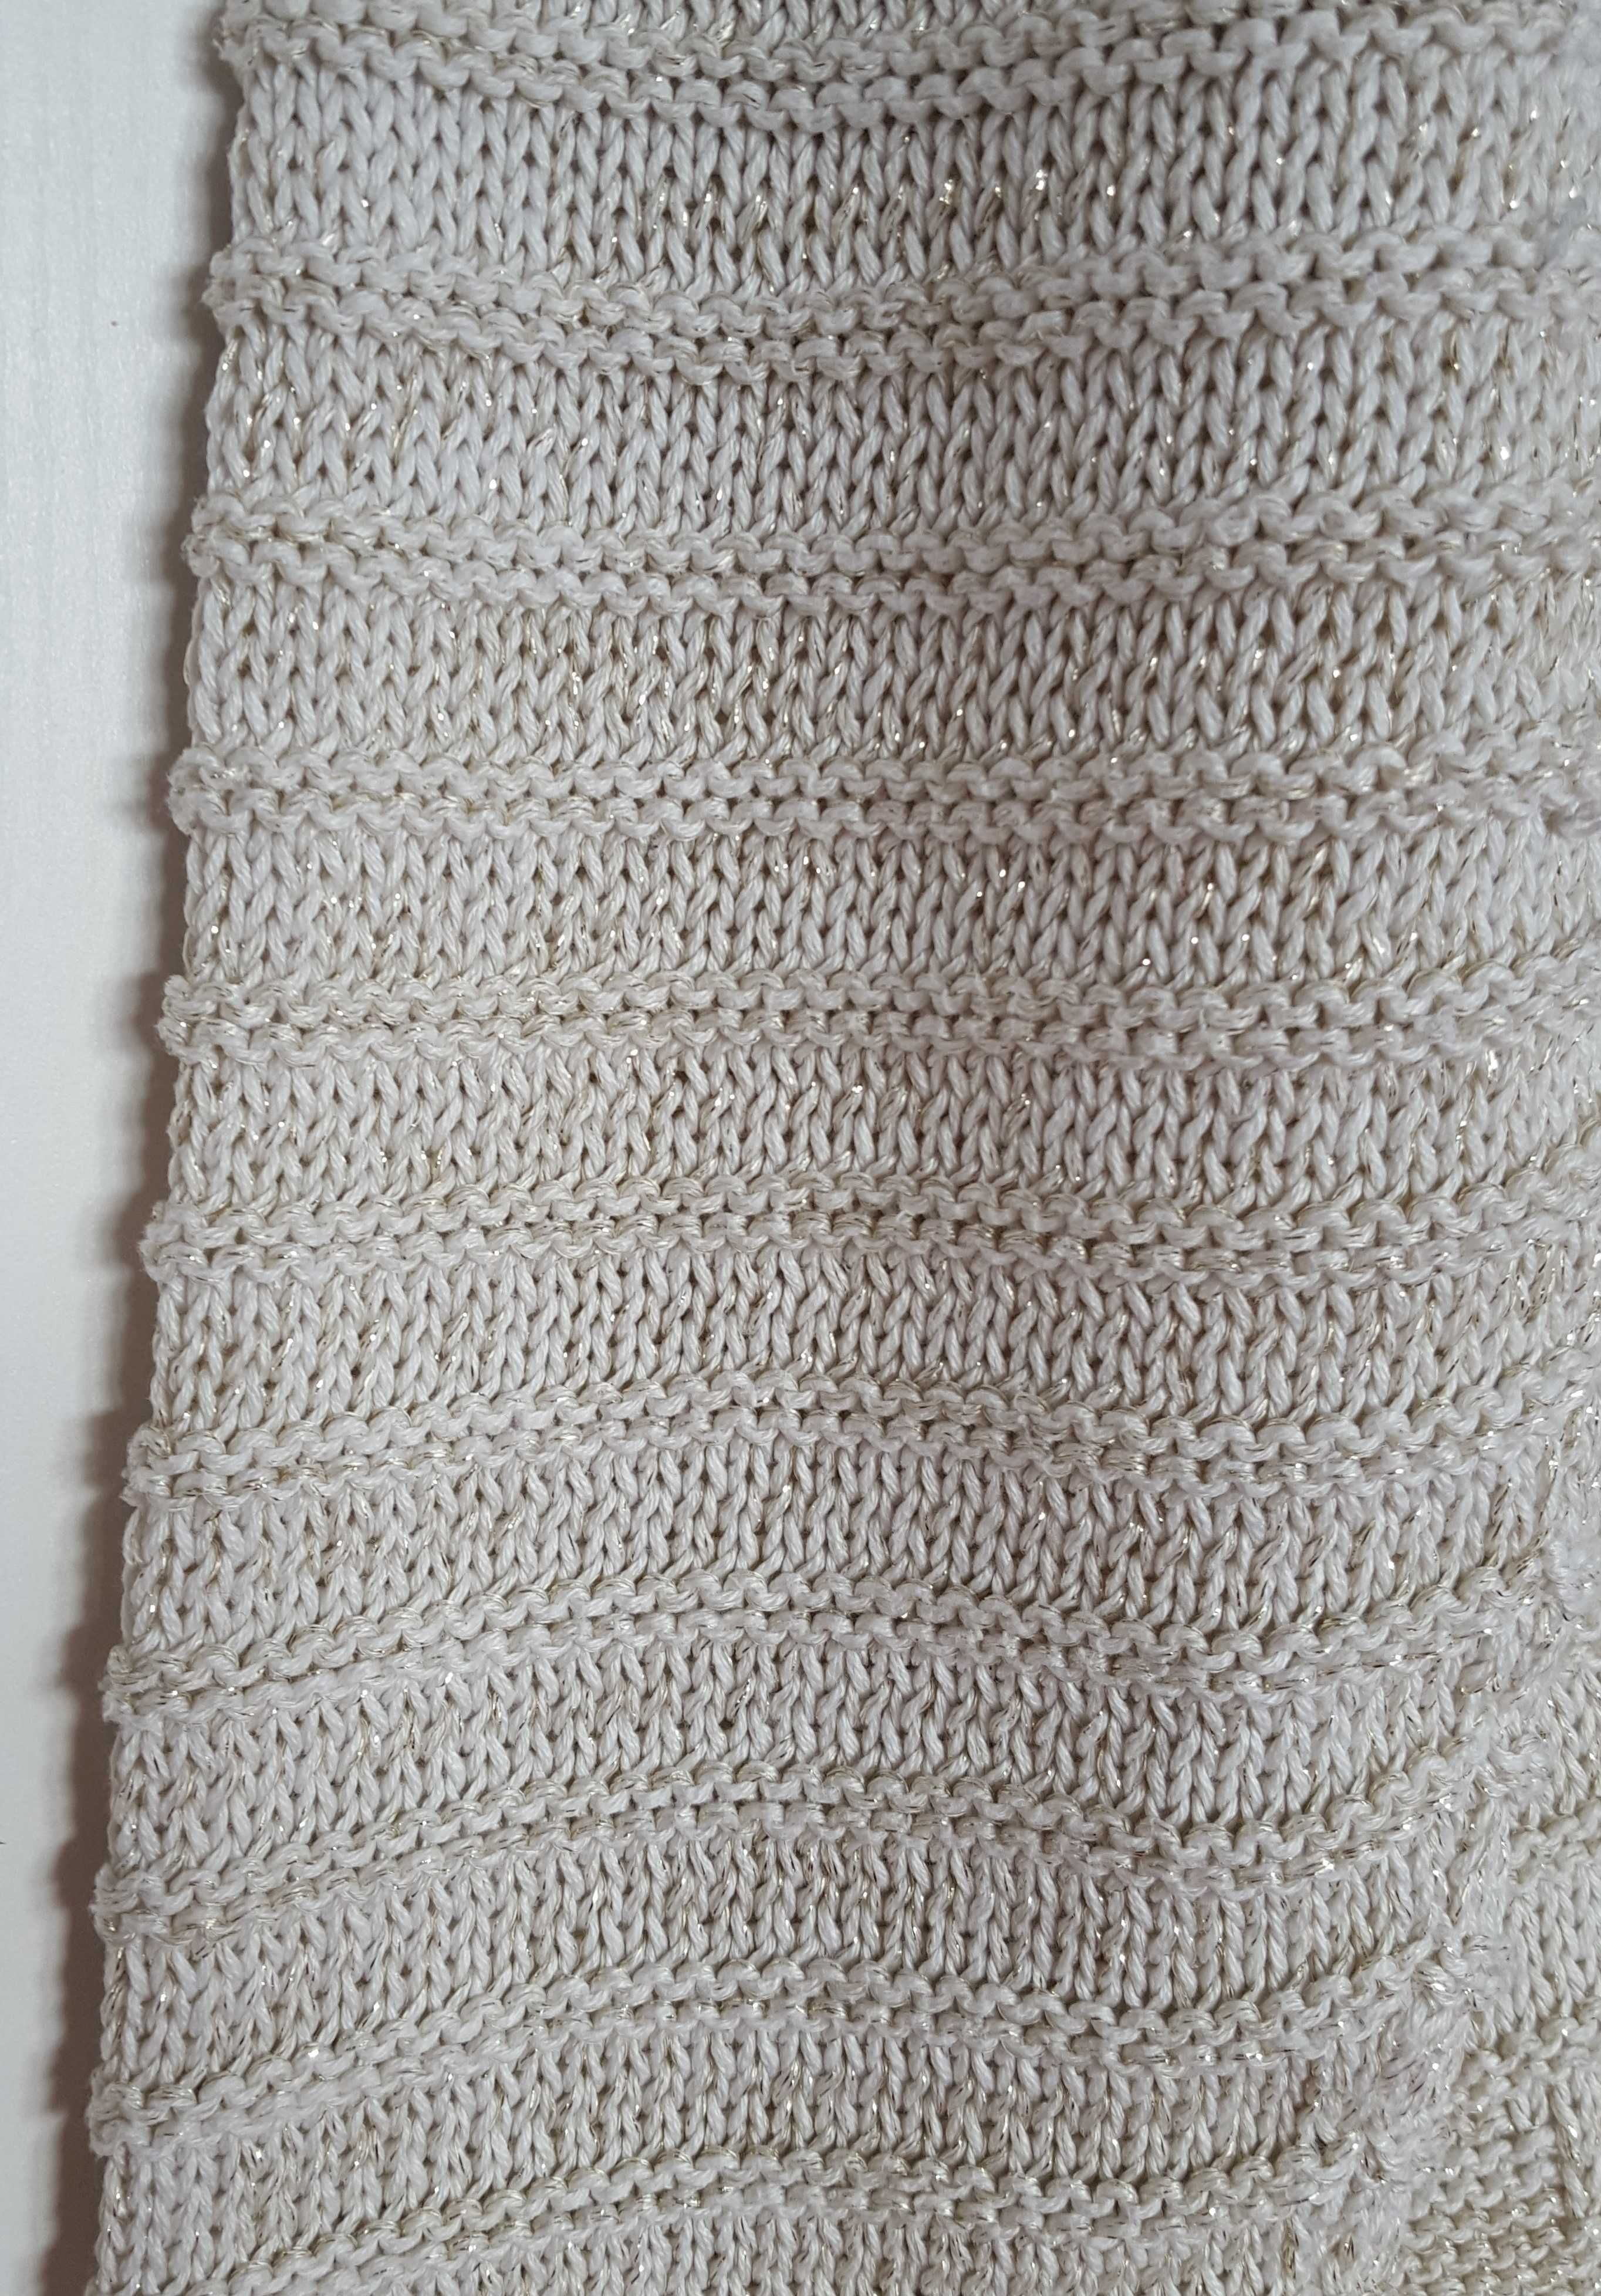 Sweter Yessica C&A beżowy złota nitka L 40 warkocz wzór